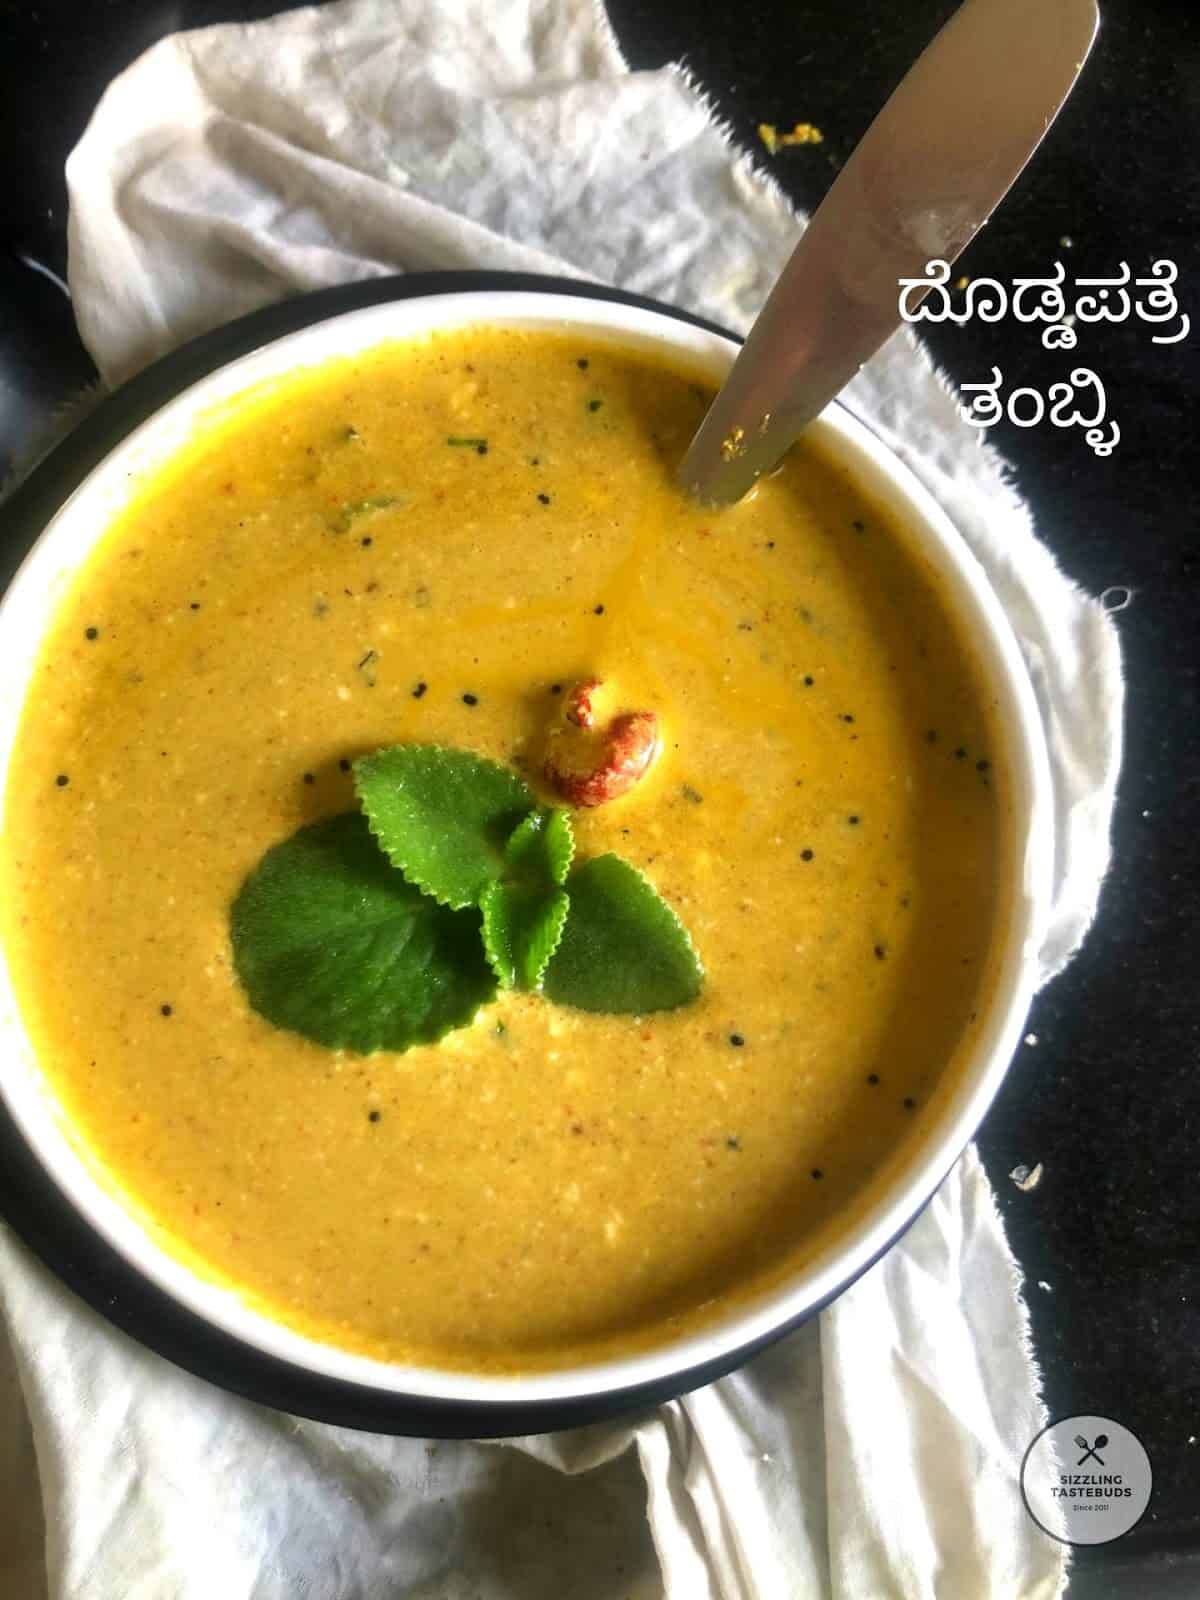 Doddapatre Tambli | Doddapatre Tambuli Recipe | A Malnad Cuisine..  ದೊಡ್ಡಪತ್ರೆ ತಂಬ್ಳಿ | Easy side dish recipes